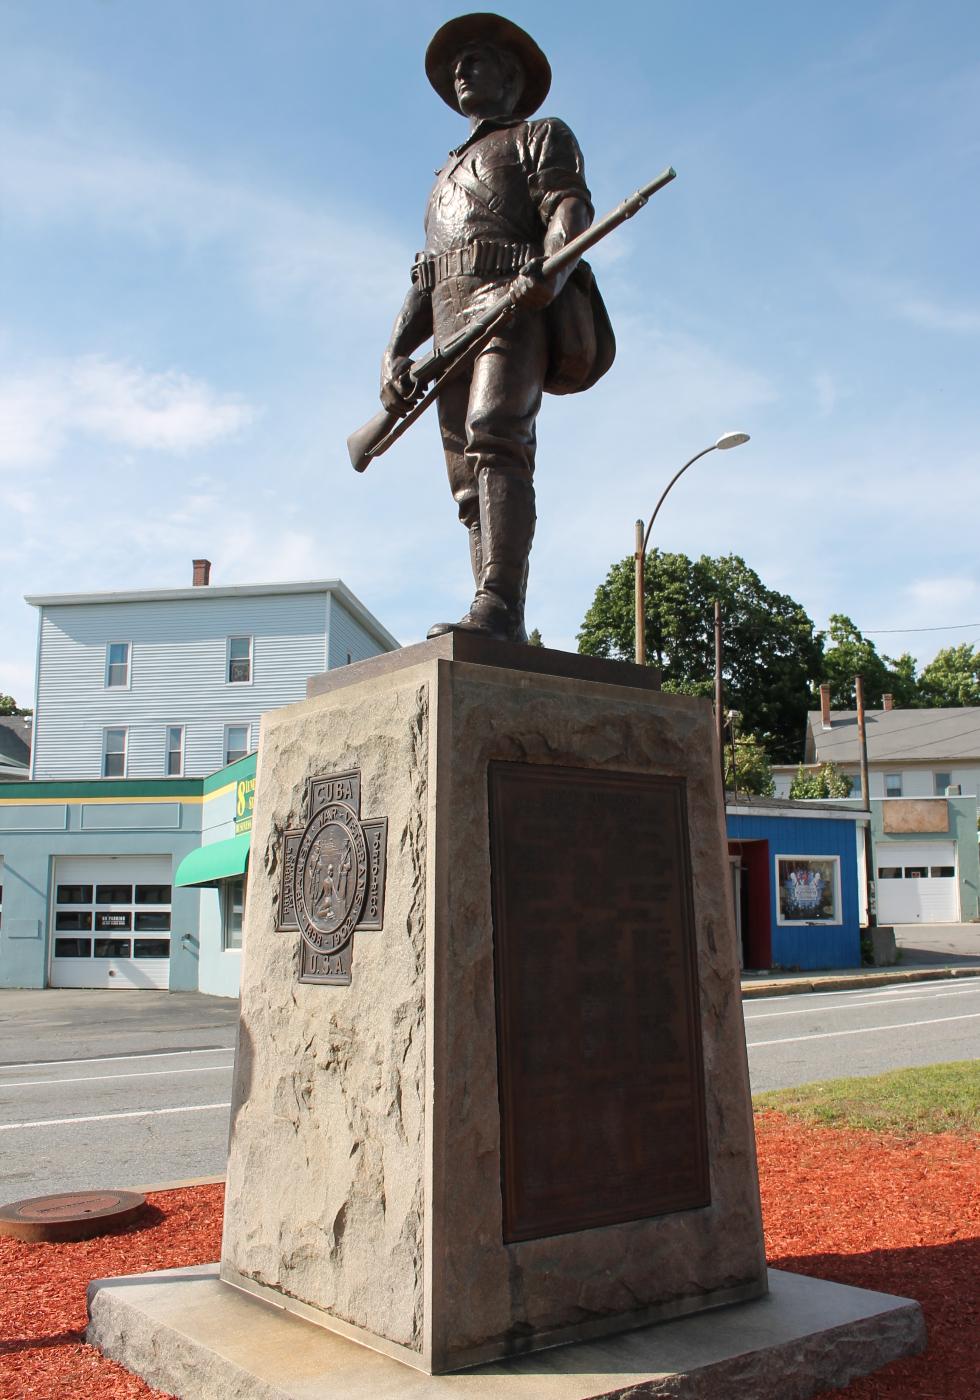 Fitchburg Massachusetts Spanish-American War Memorial